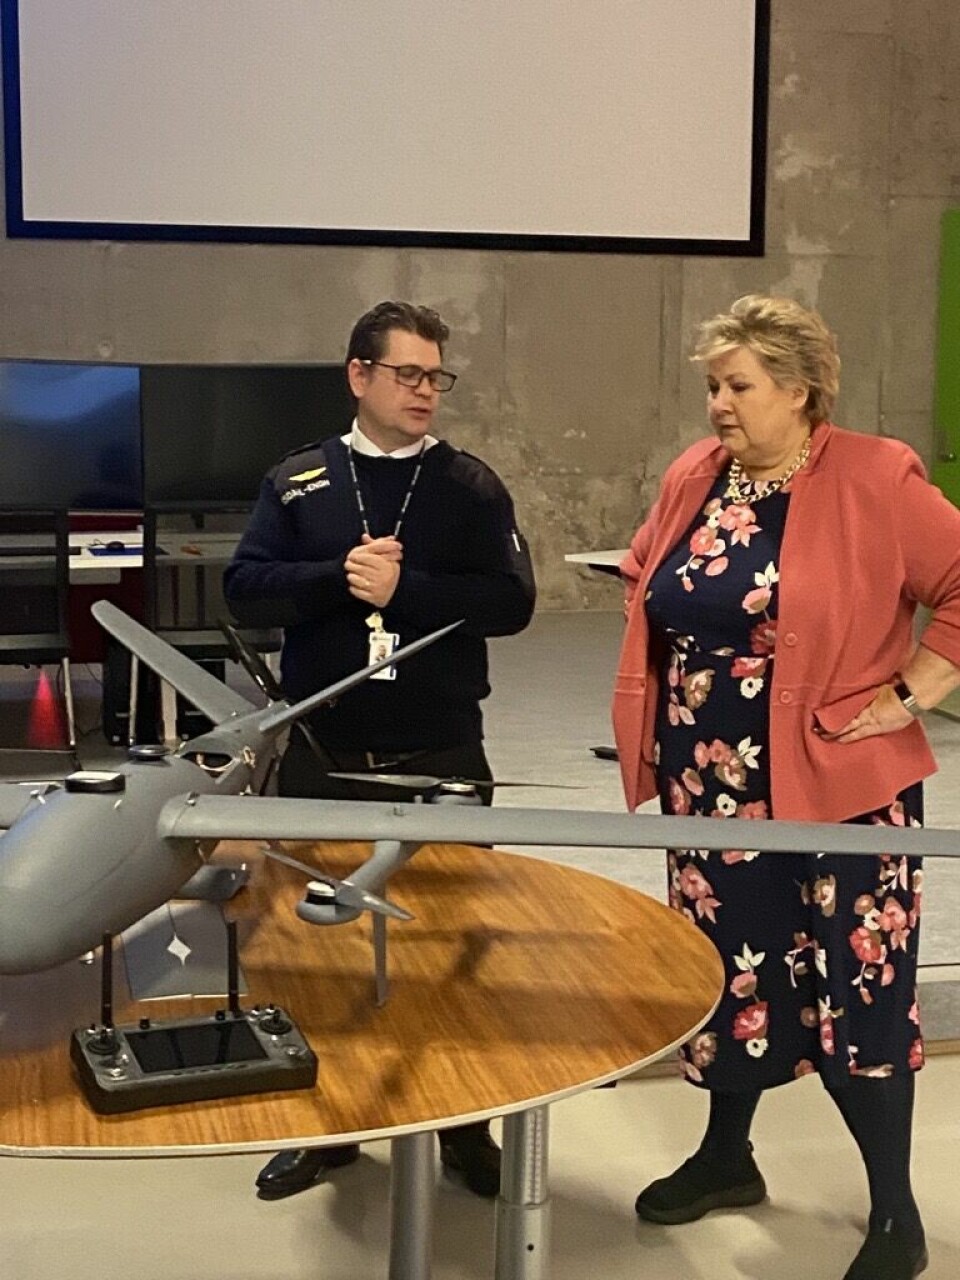 Erna Solberg åpner dronehallen på Bjørnholt videregående. Foto: Kim Fredriksen og Jonas Lie